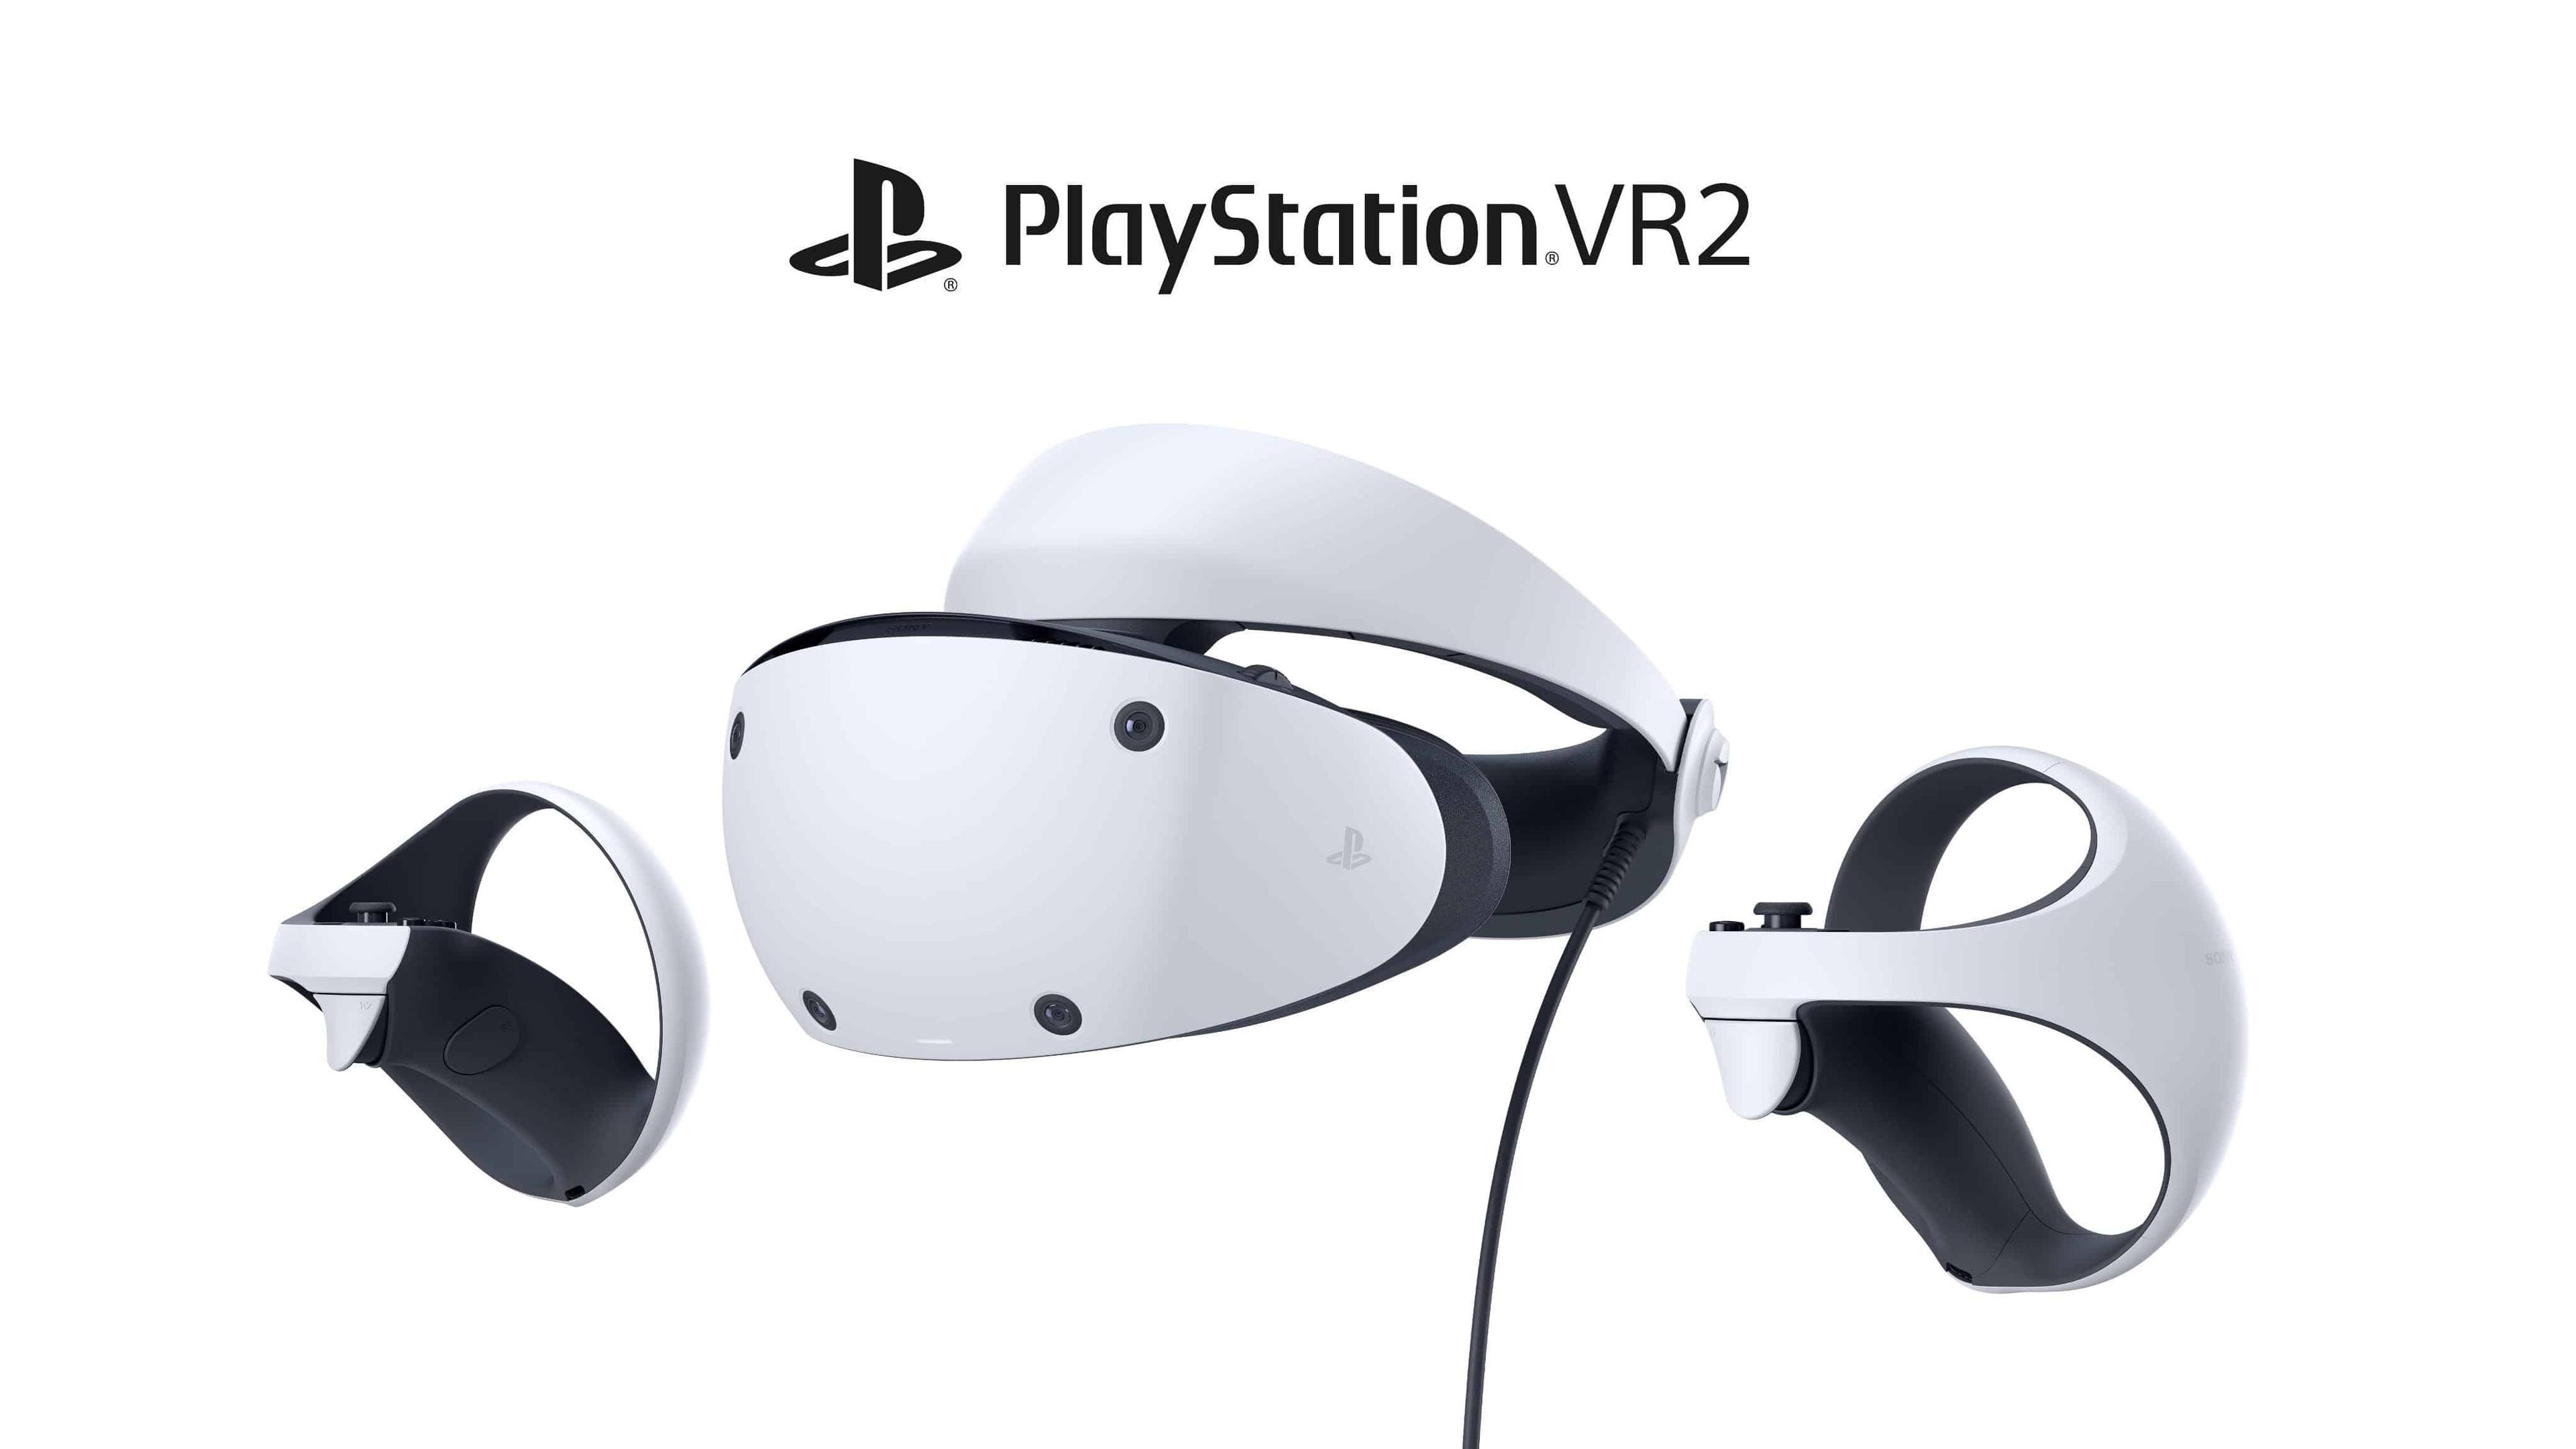 PS VR2 kit